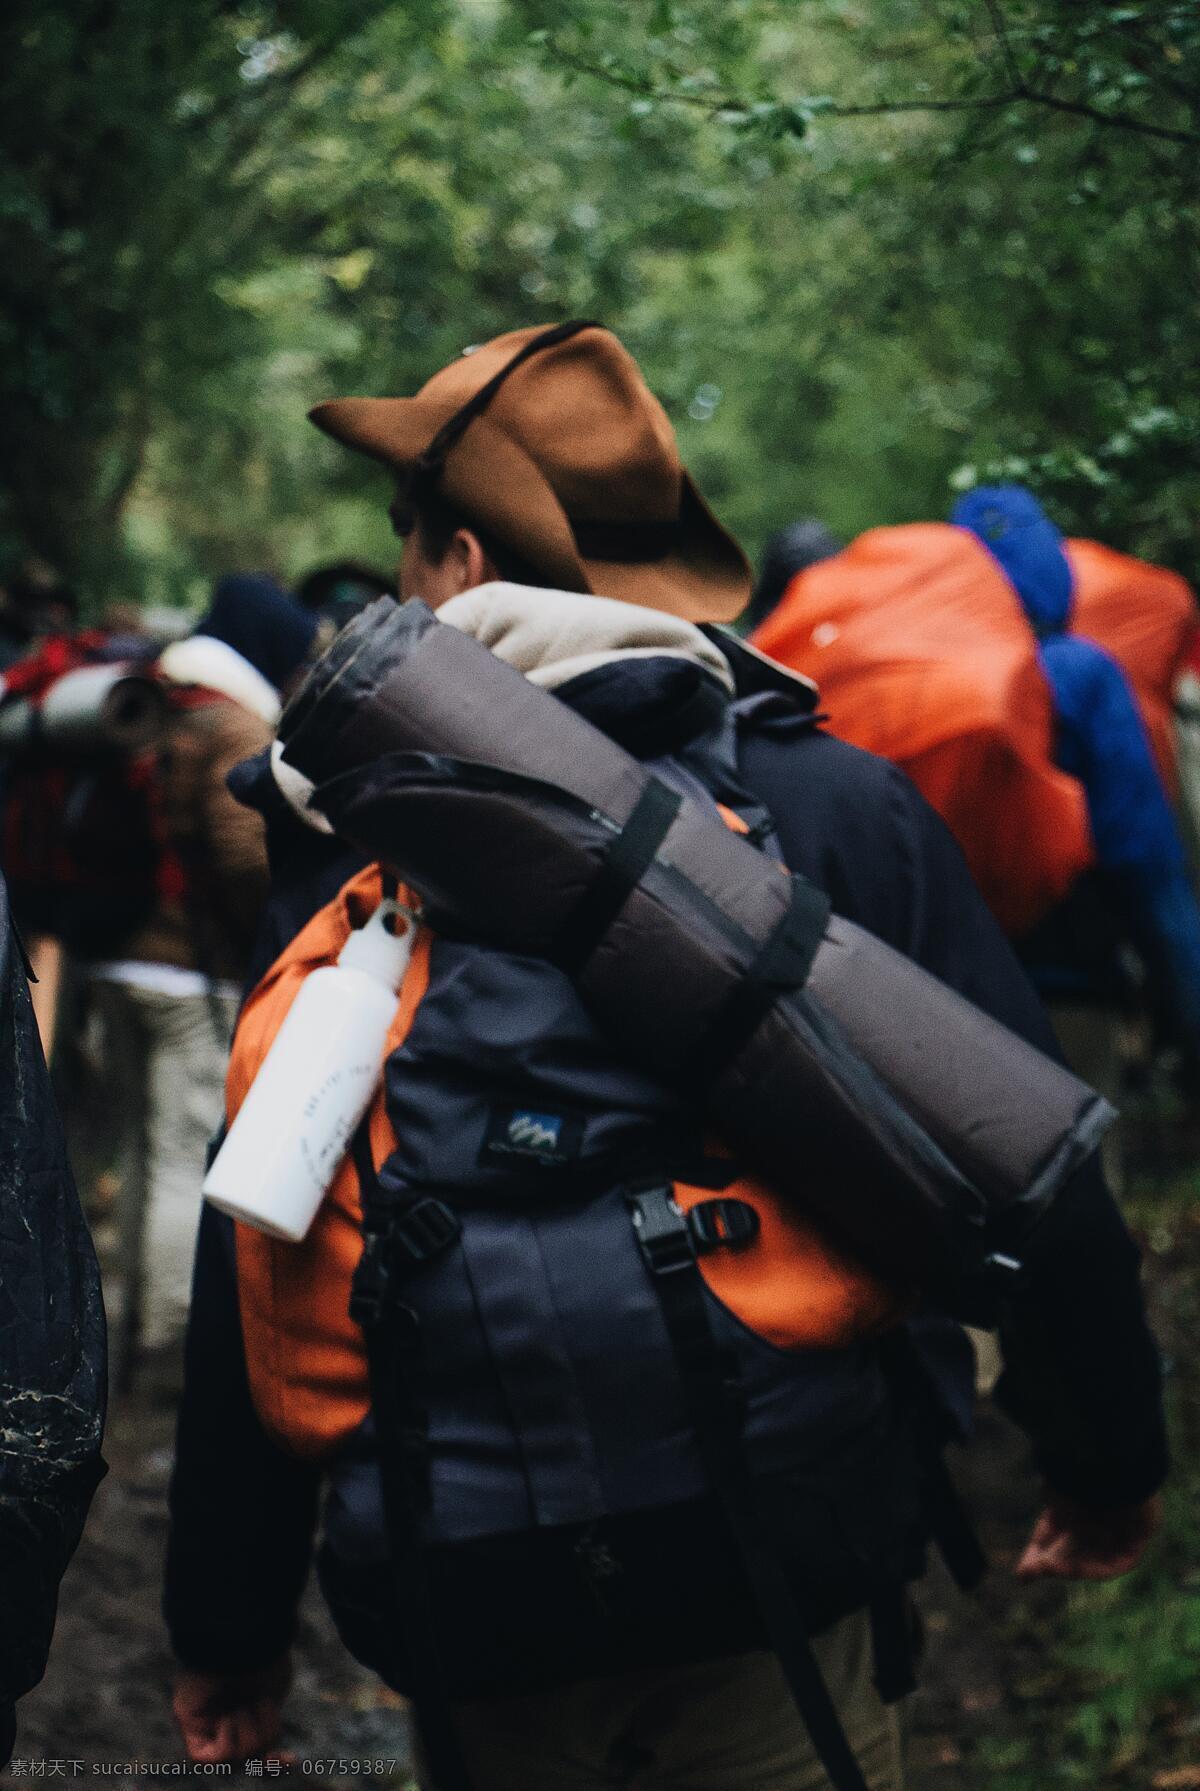 徒步 旅行 人们 登山 徒步旅行 登山运动 出行 背包 帐篷 旅行的人们 出游 家庭出游 图库人文旅游 旅游摄影